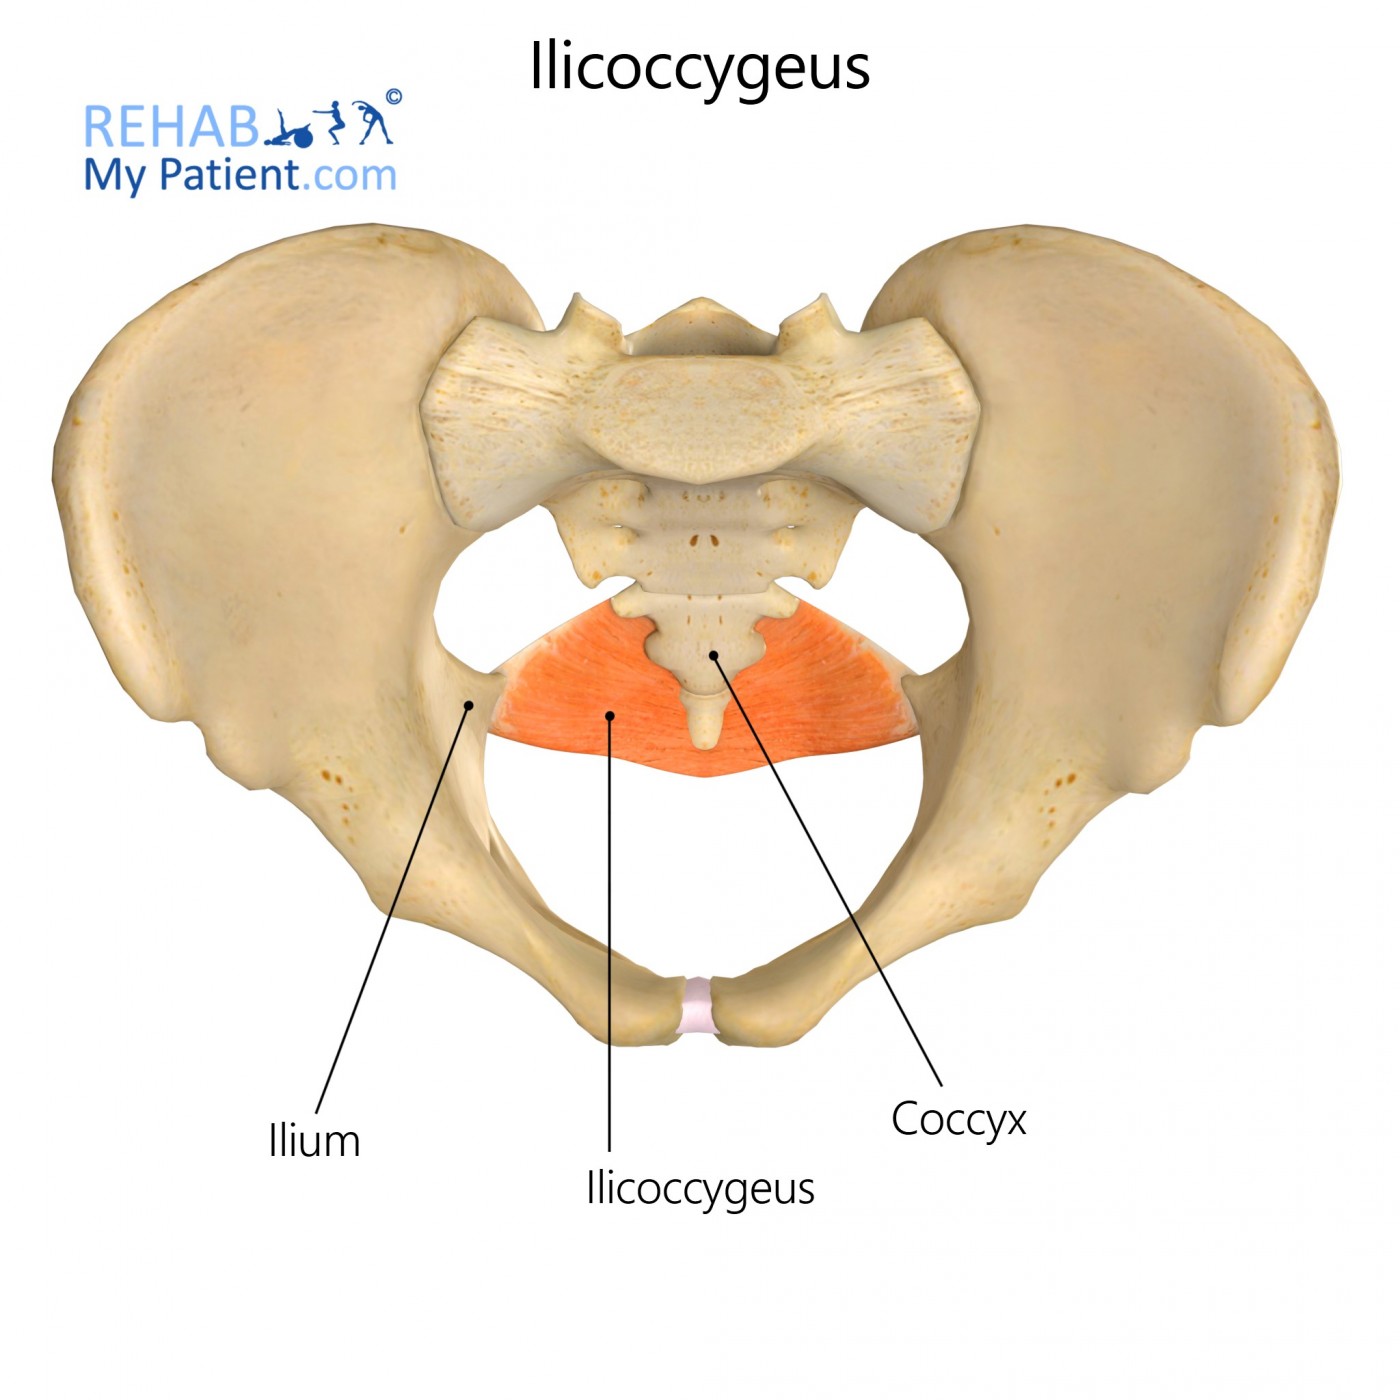 Iliococcygeus